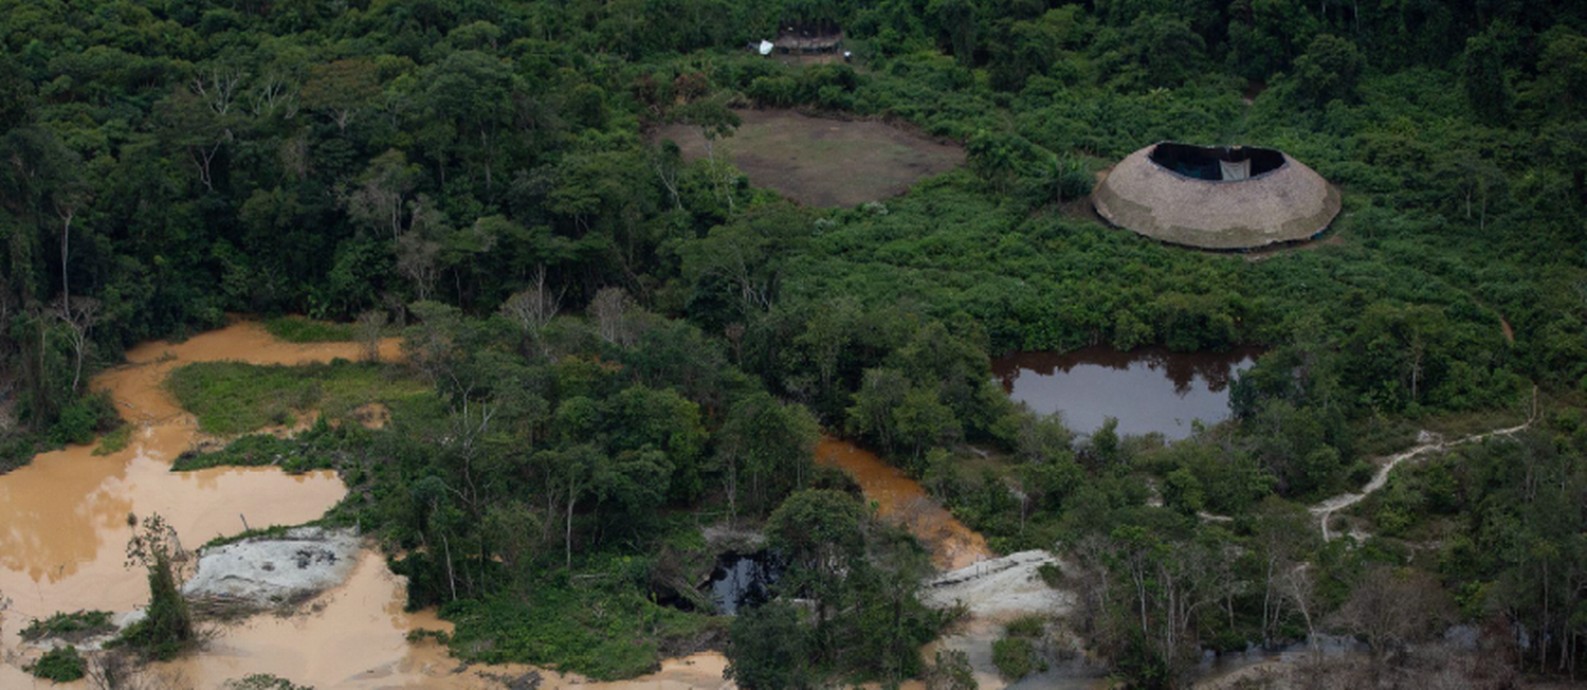 No Rio Xitei, garimpo ilegal próximo a casas-coletivas indígenas contamina a água que abastece as famílias Ianomâmi Foto: Bruno Kelly/ HAY